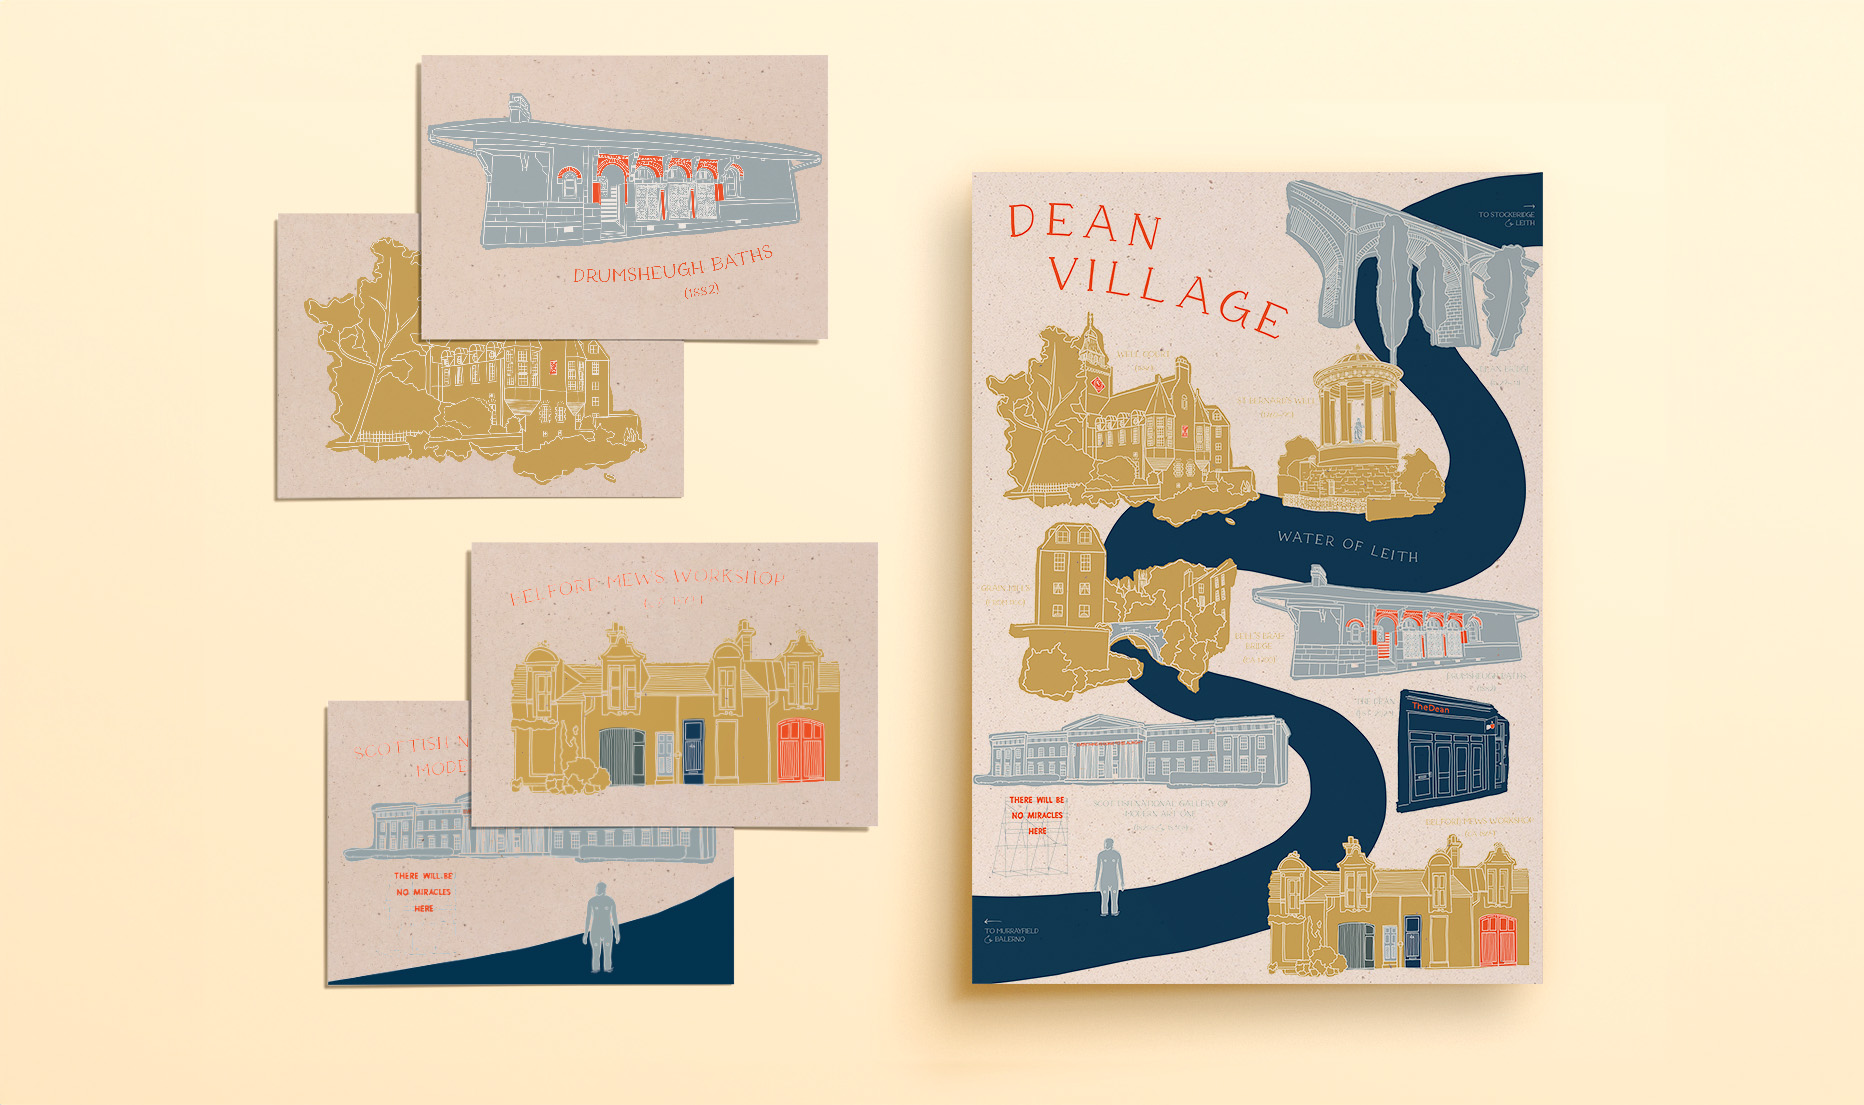 Dean Village Illustrated Poster & Postcards